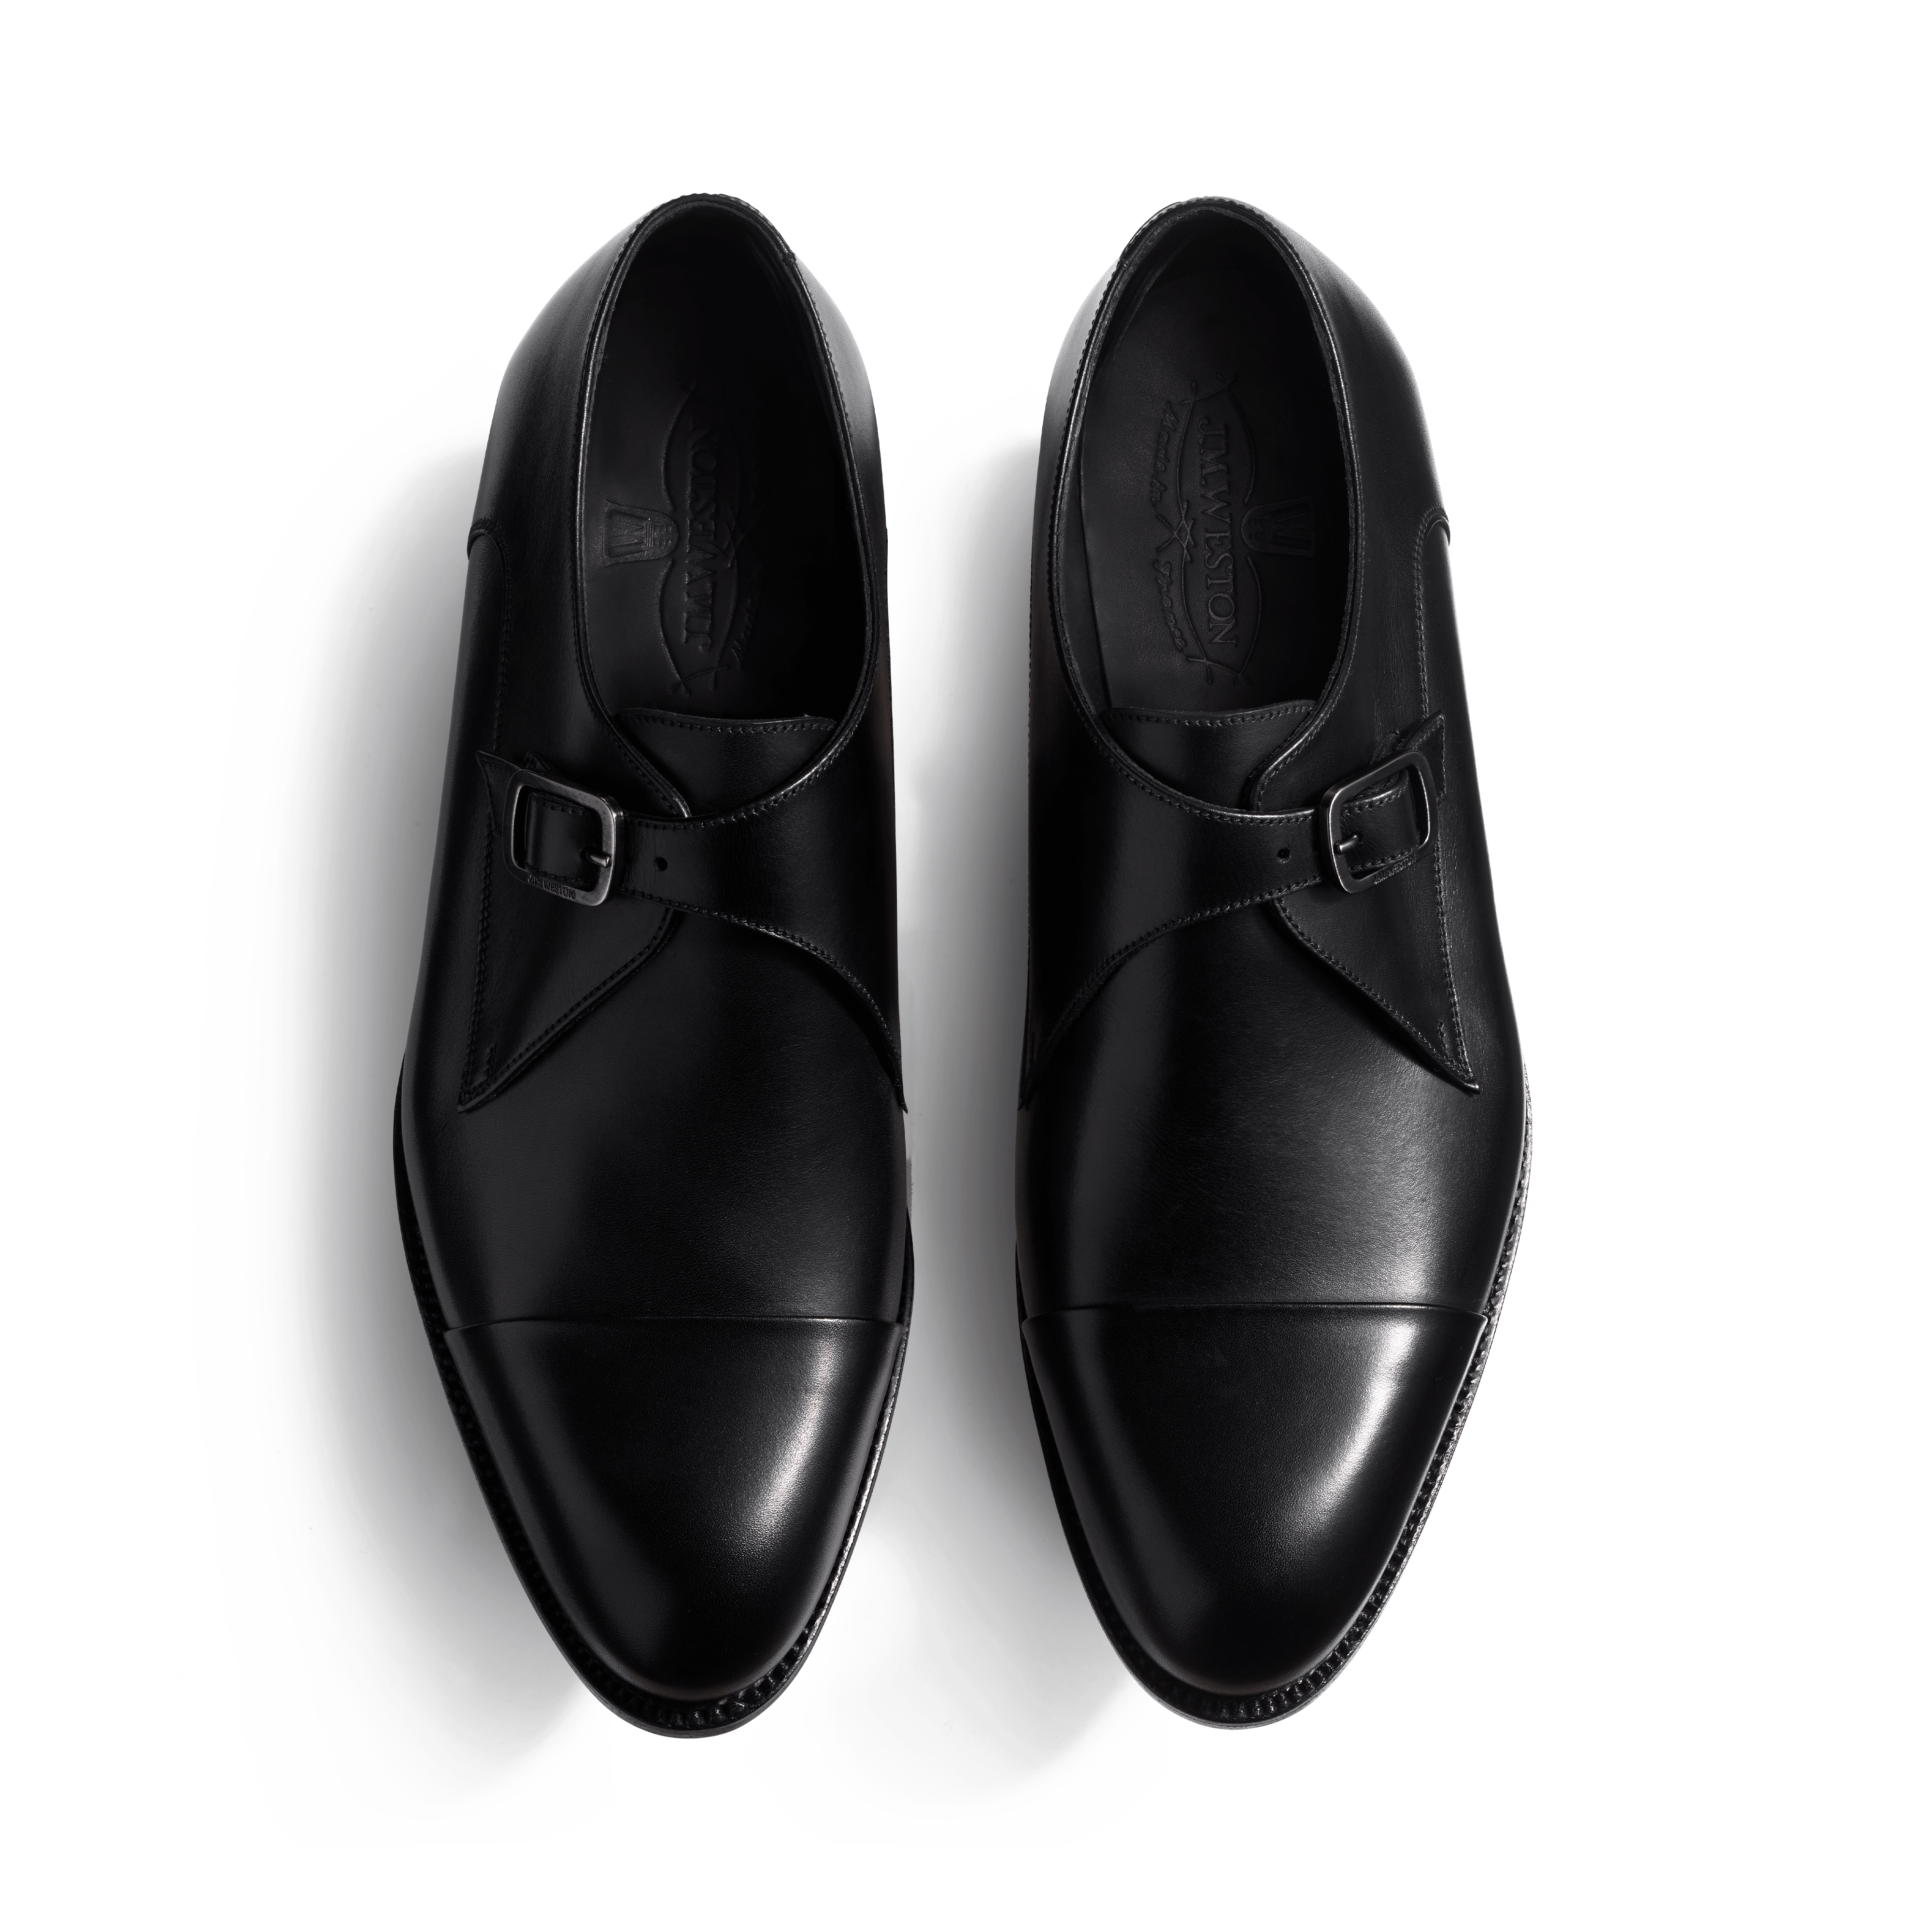 Chaussures à boucle homme en cuir lisse noir